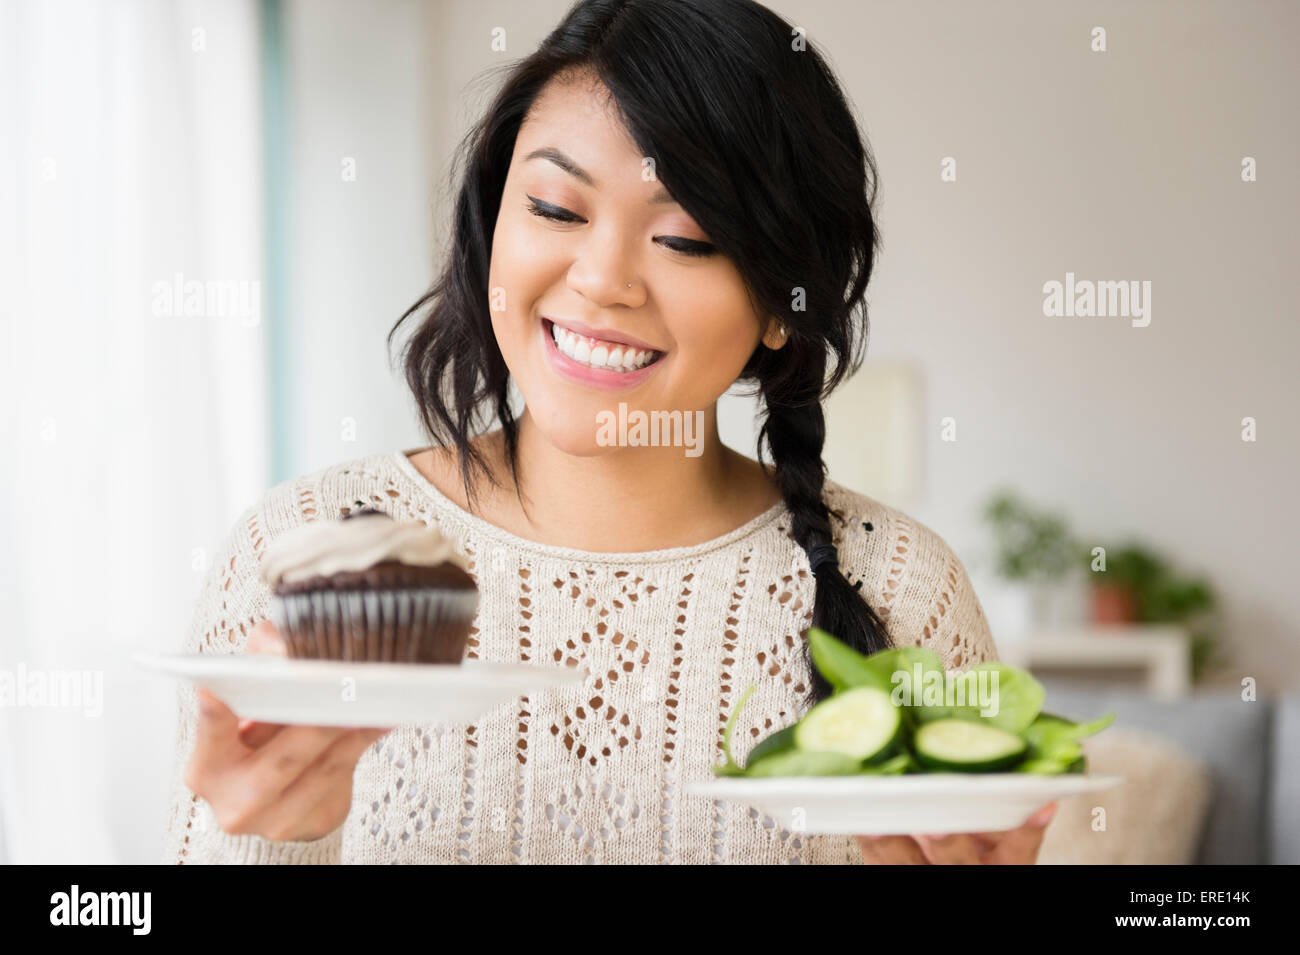 Pacific Islander woman choisir entre cupcake et salade Banque D'Images